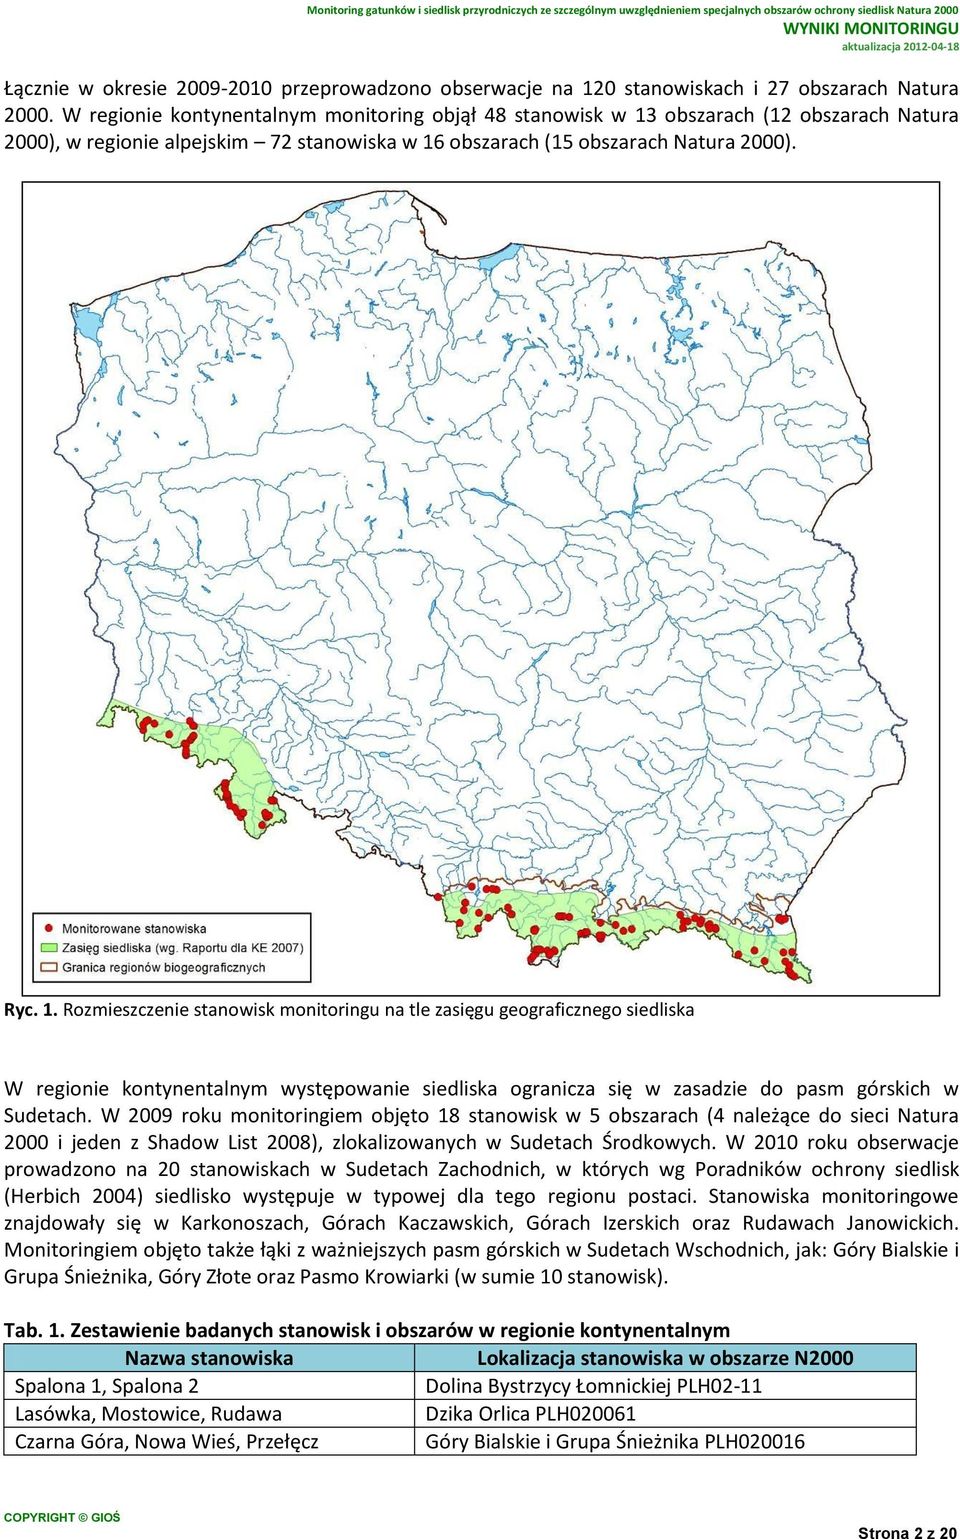 obszarach (12 obszarach Natura 2000), w regionie alpejskim 72 stanowiska w 16